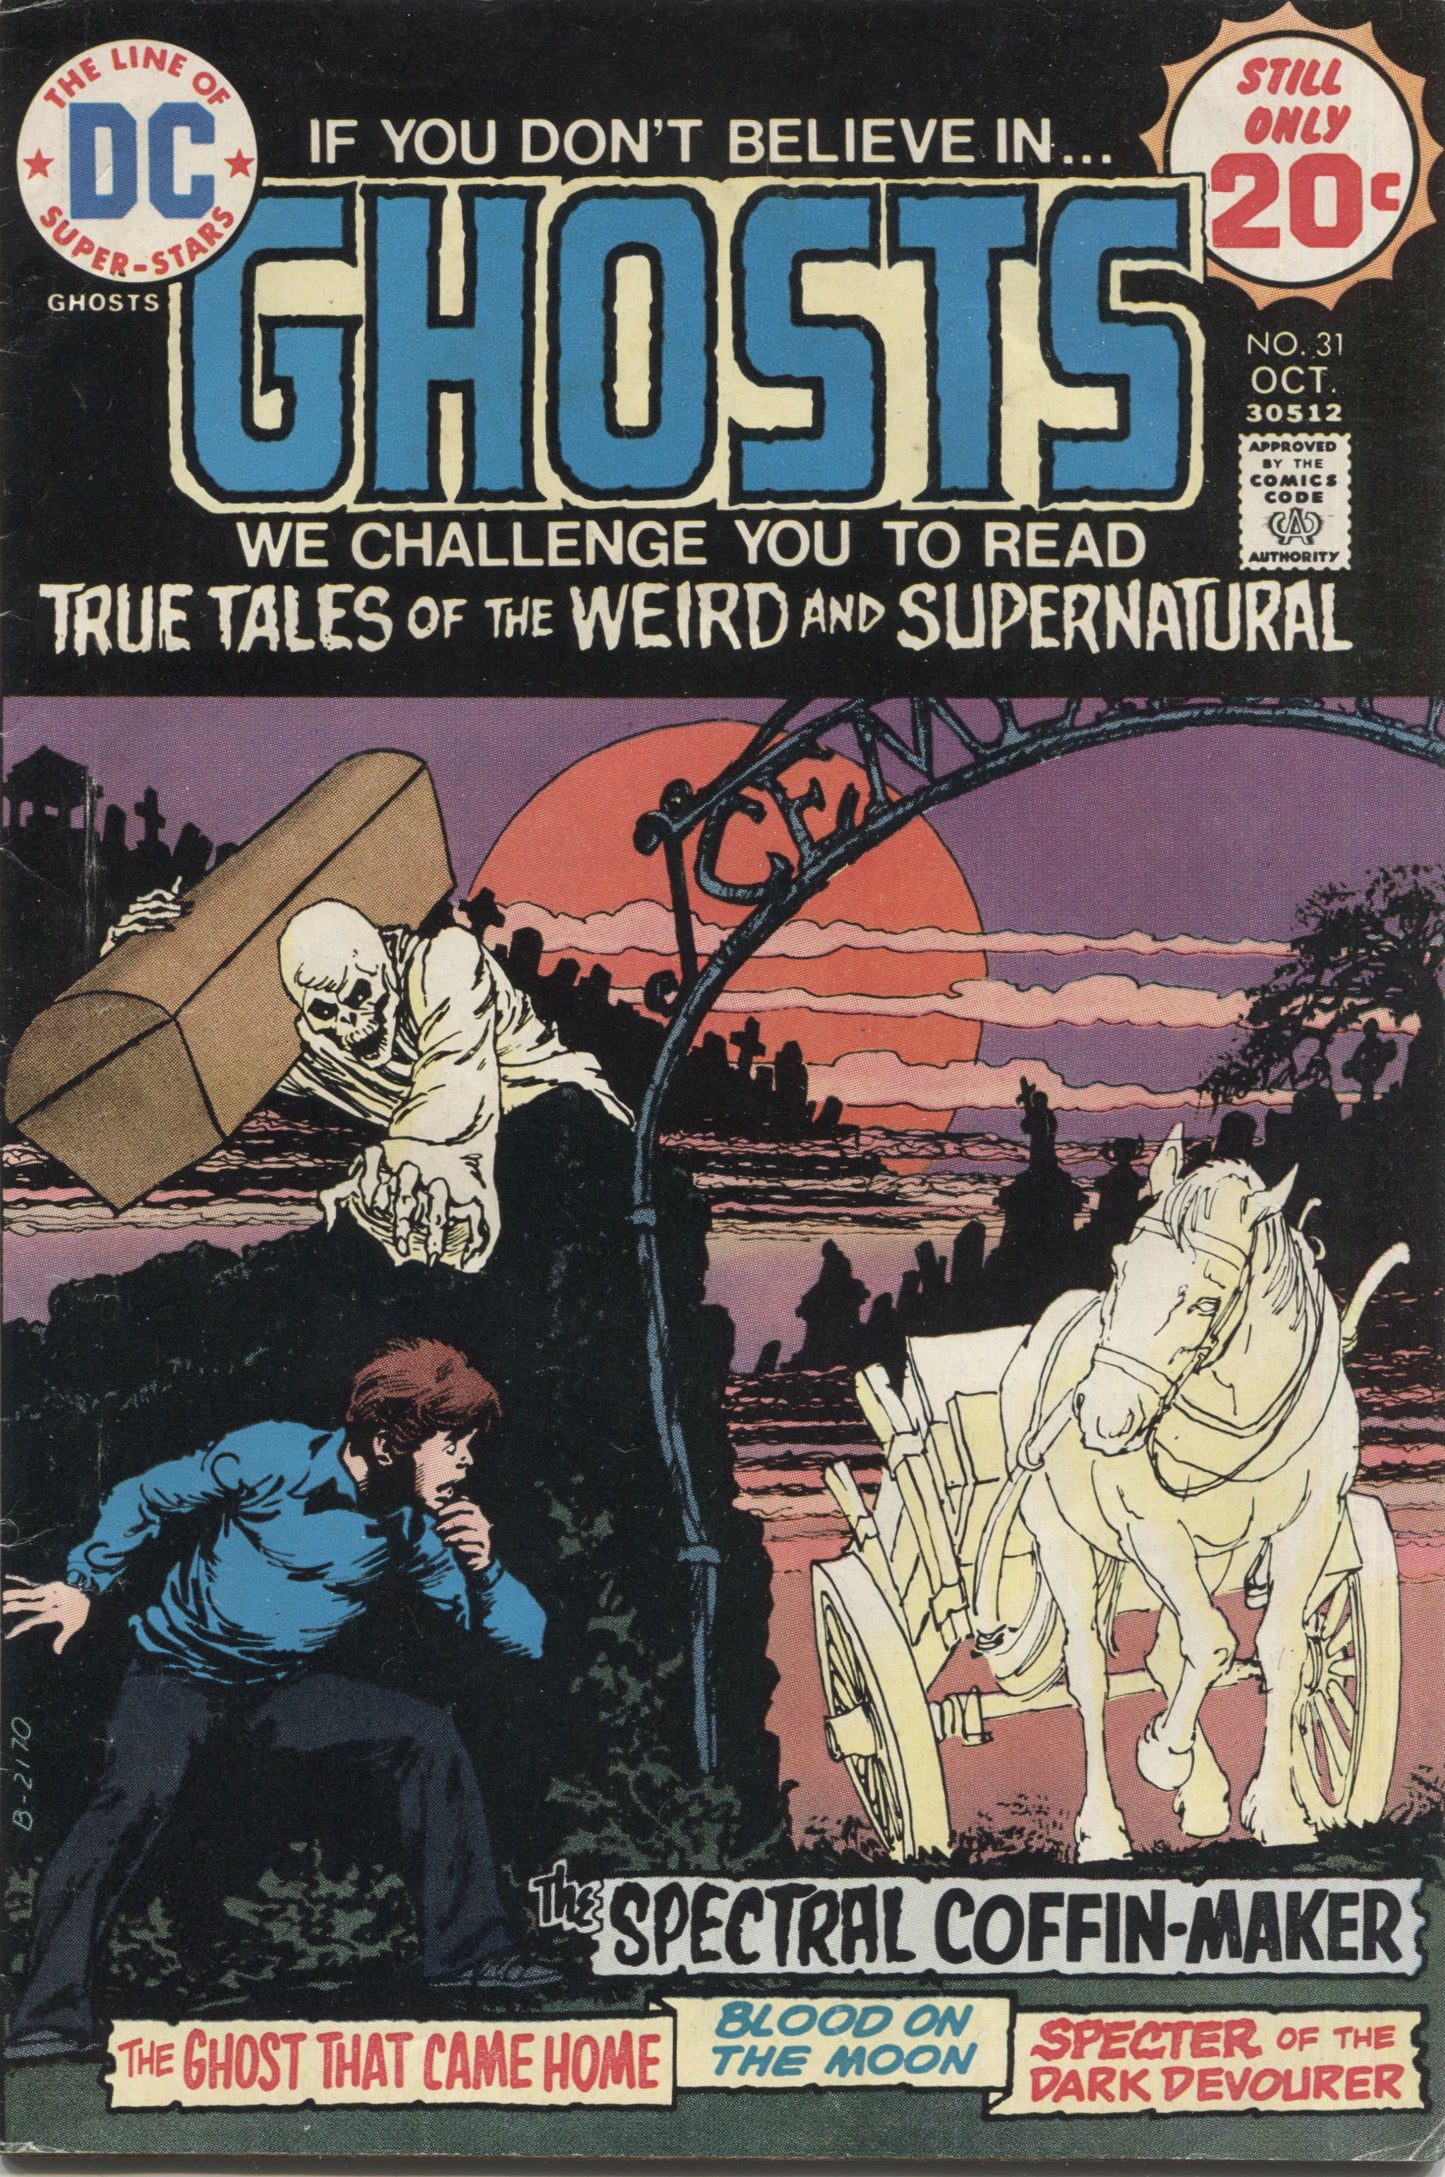 Ghosts No. 31, DC Comics, October 1974